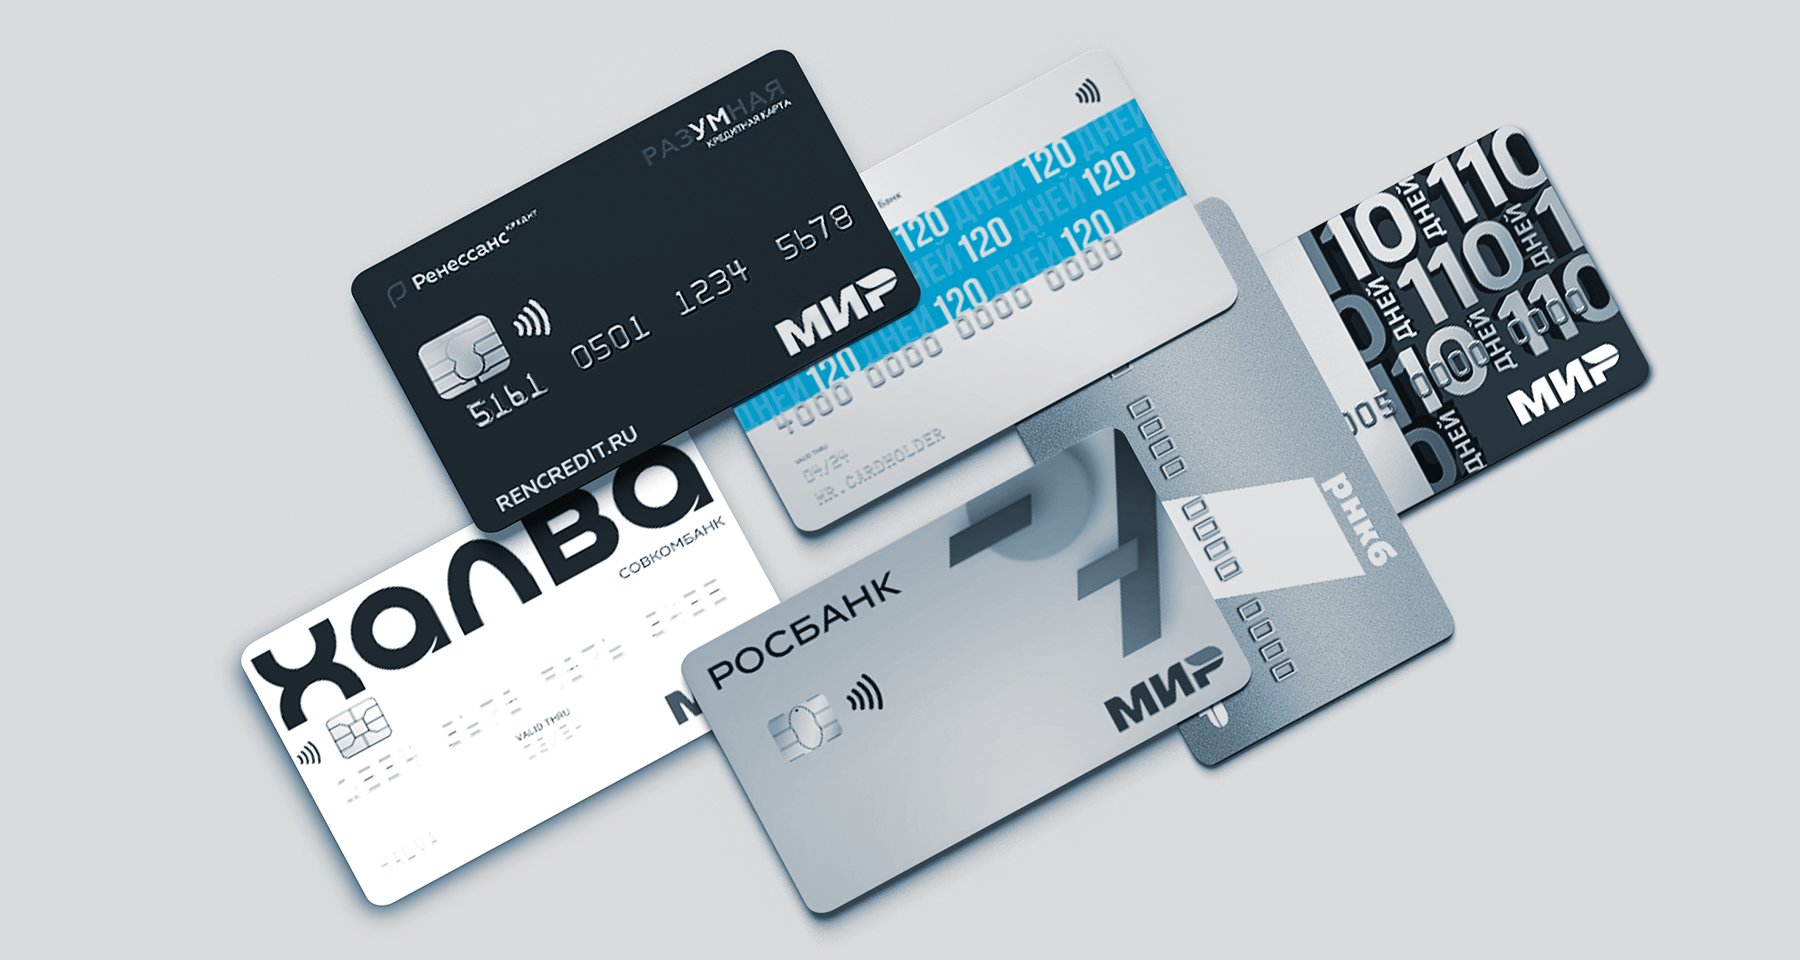 6 бесплатных кредитных карт, с которых можно снимать наличные без комиссии  | Аналитические исследования | Банки.ру